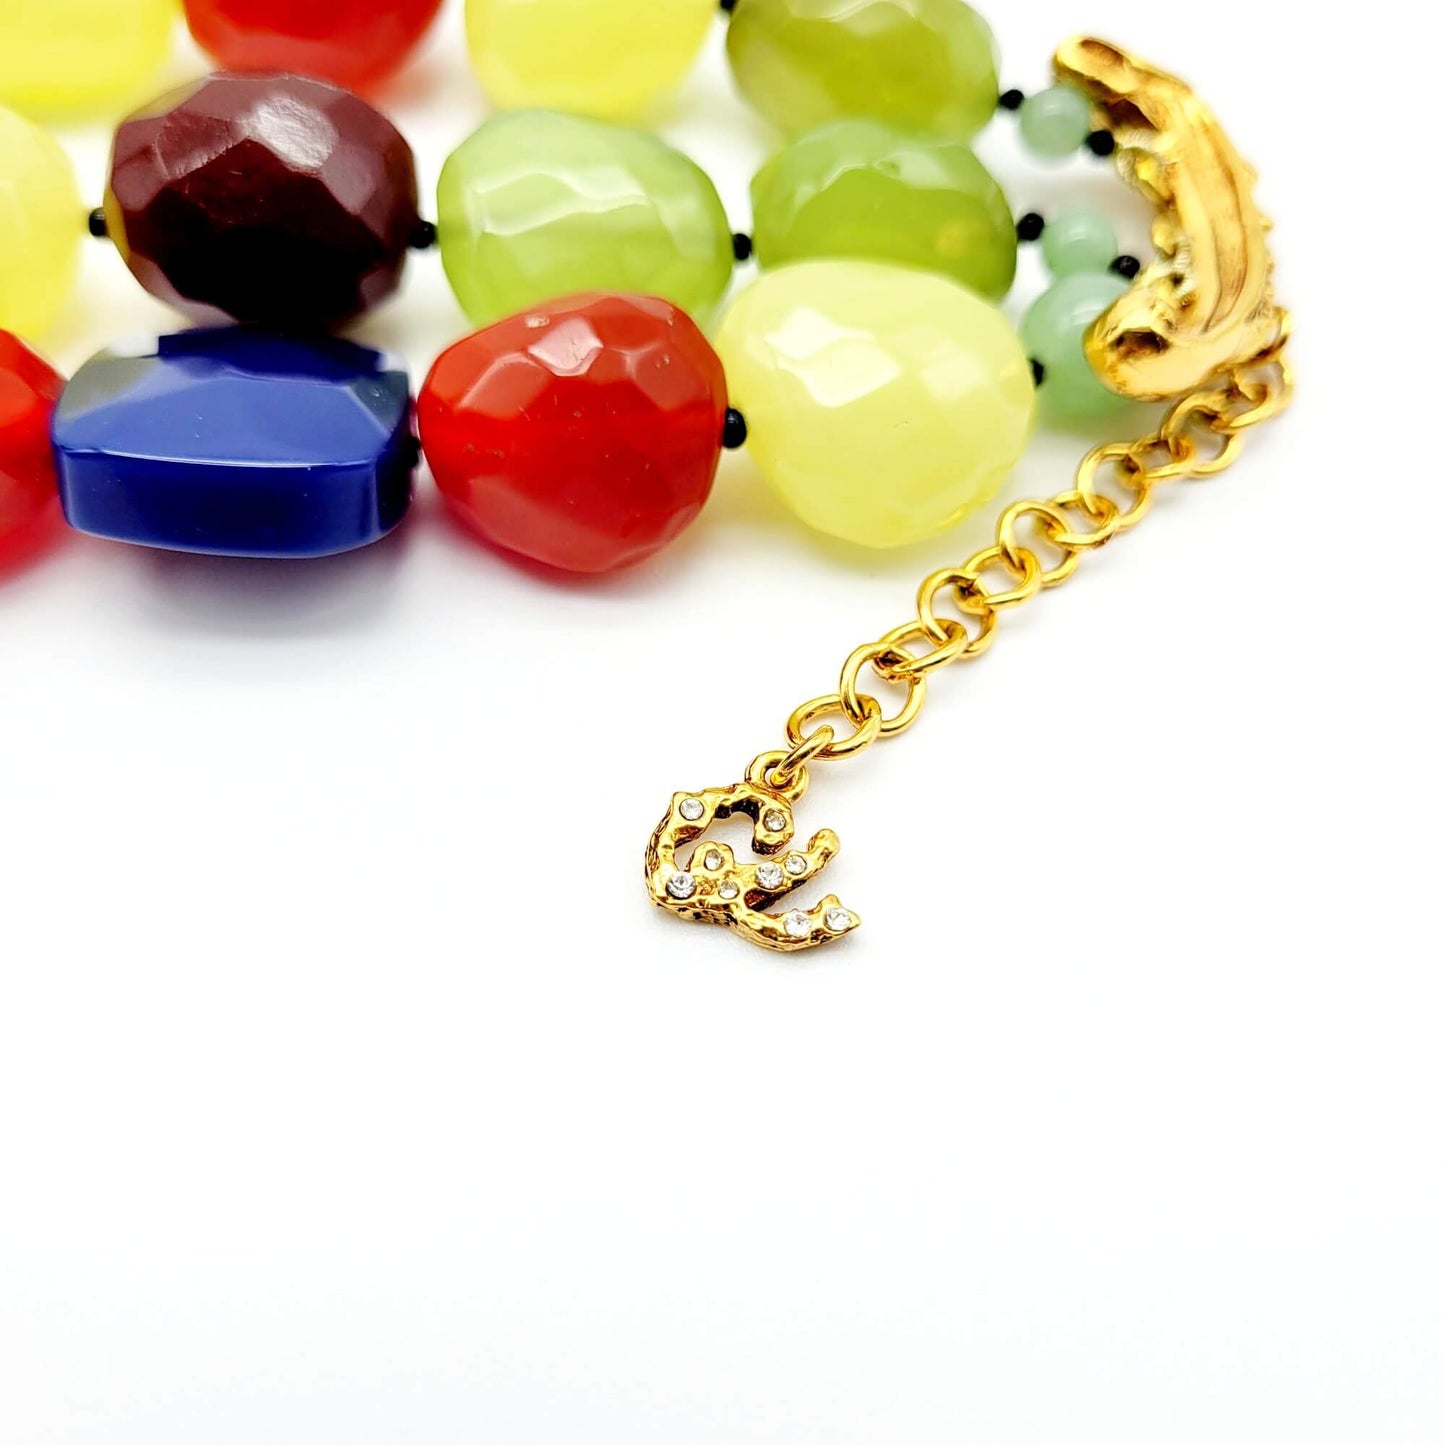 Original vintage Christian Lacroix Multicolor Bead Bracelet